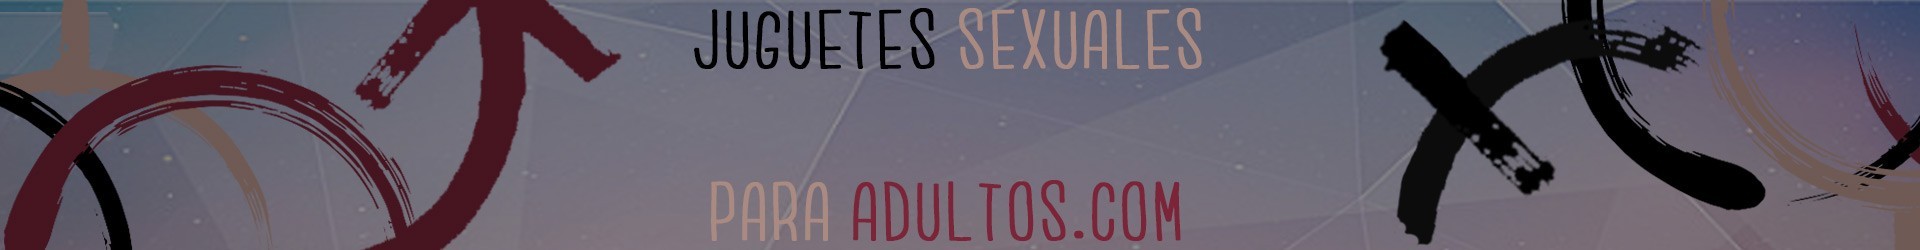 Antifaces / Máscaras - Juguetes Sexuales para Adultos Sex Shop